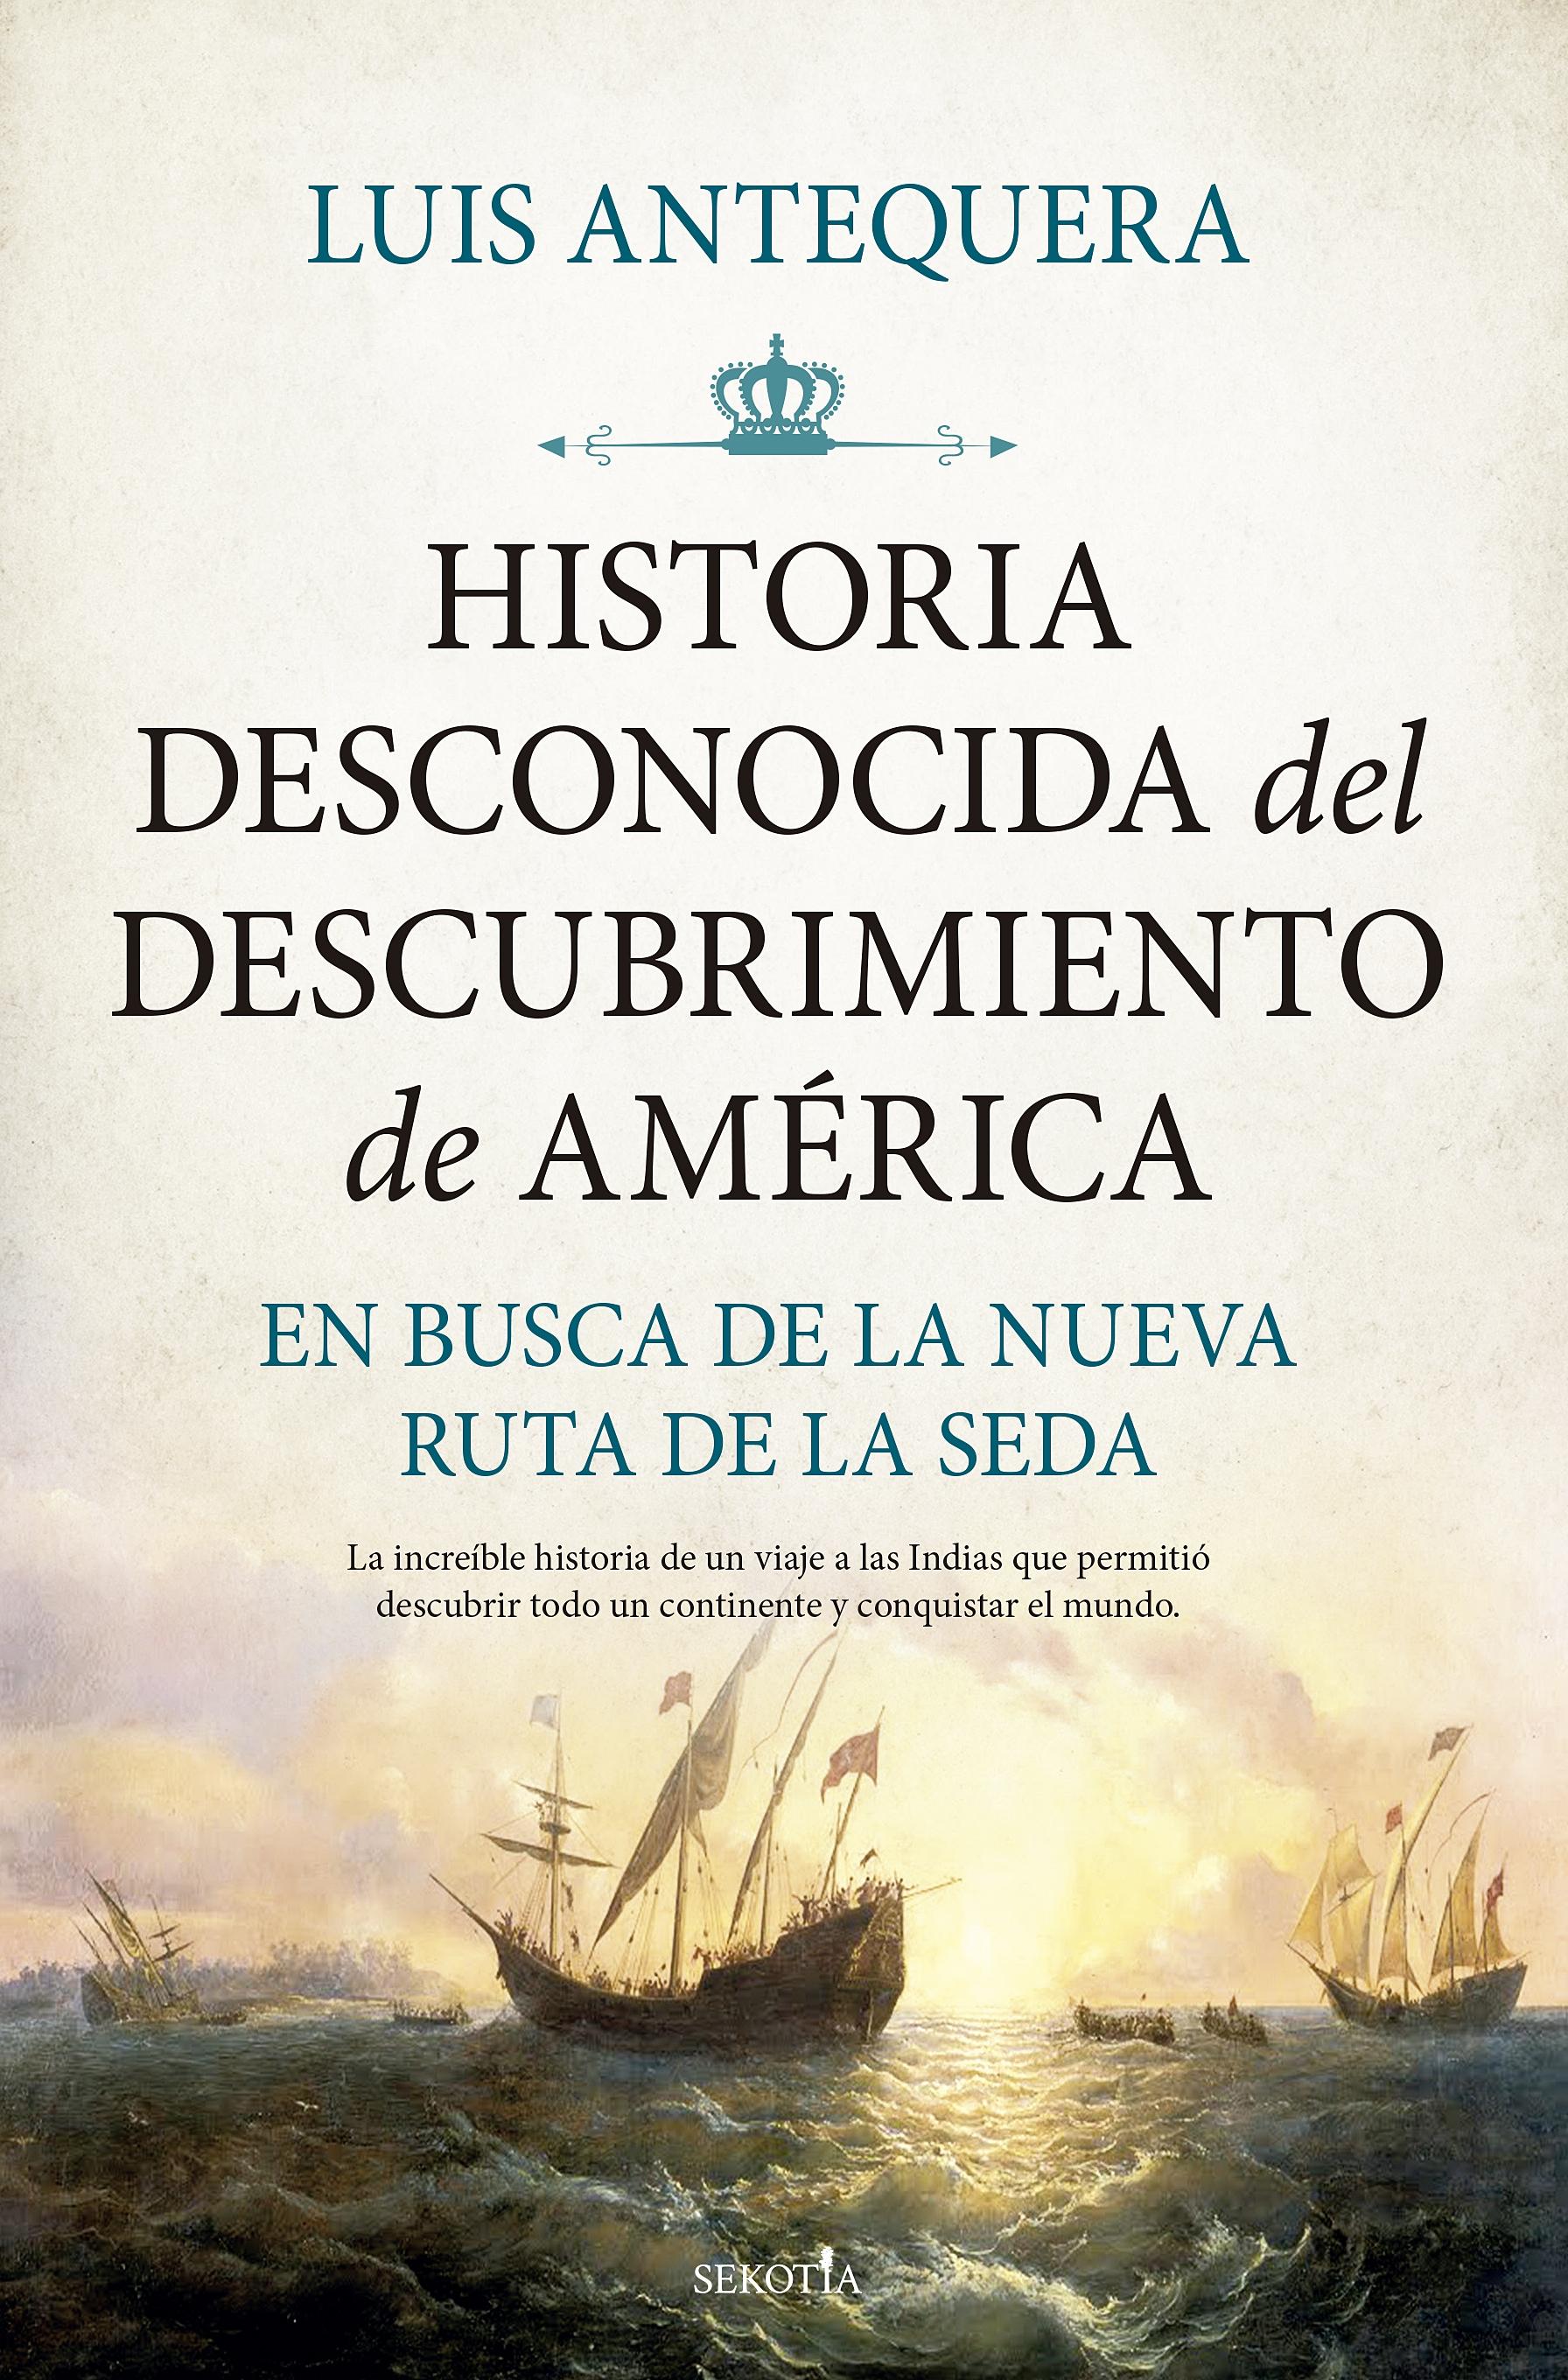 Historia desconocida del descubrimiento de América "En busca de la nueva ruta de la seda"